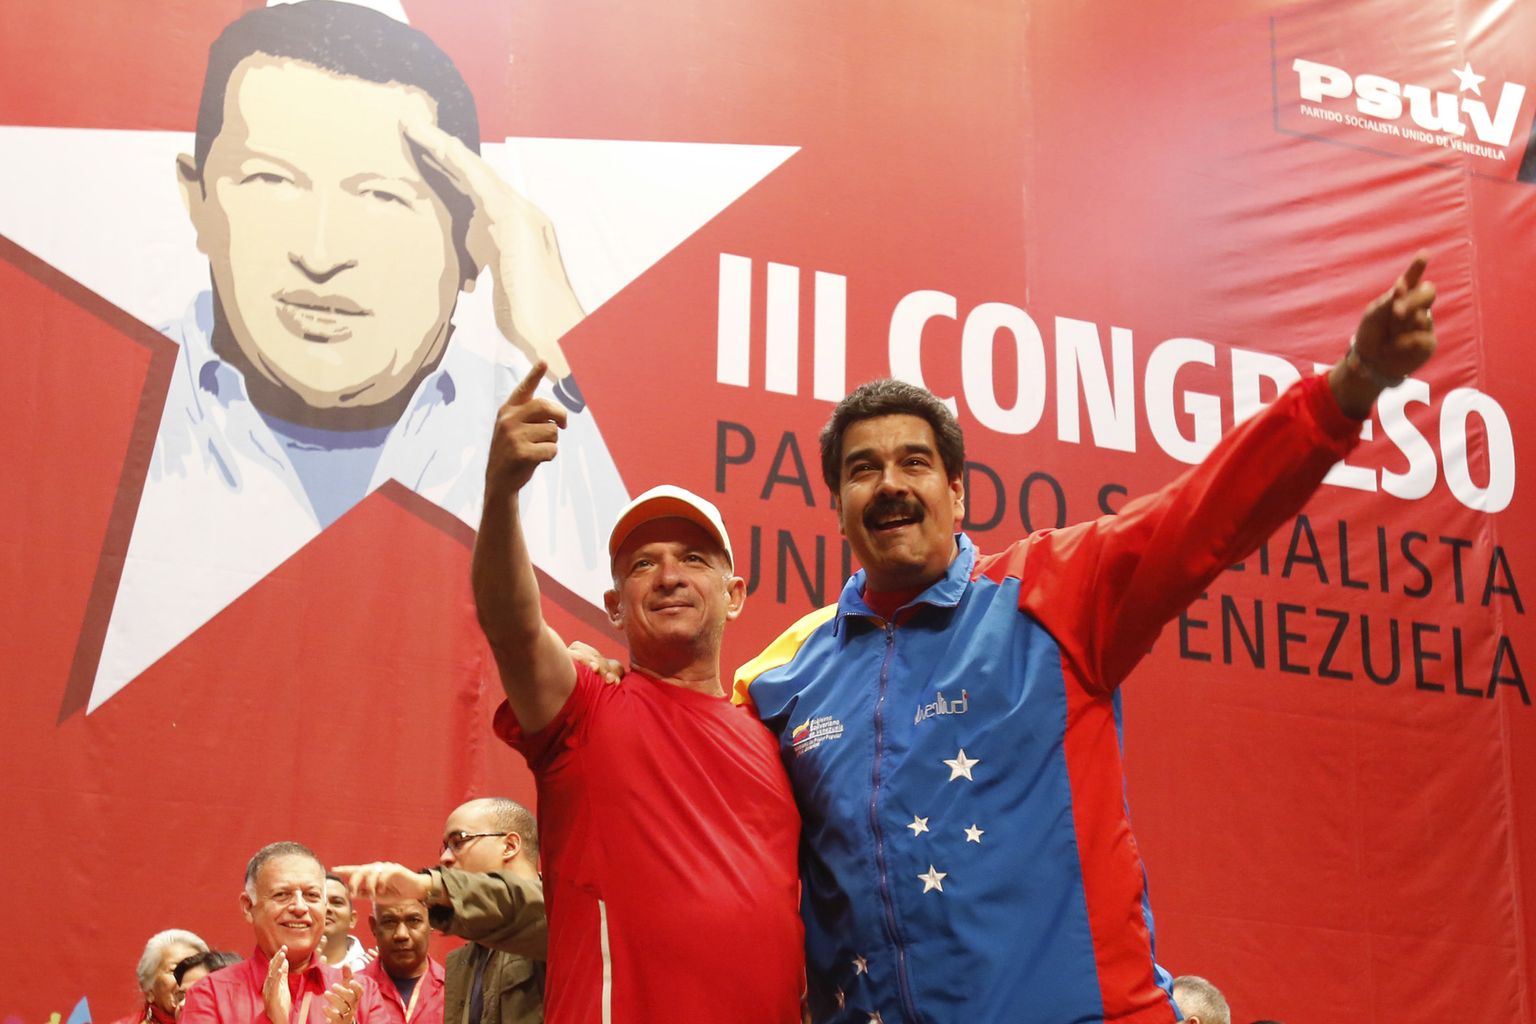 Erru läinud sõjaväeluure ülem Hugo Carvajal ja Venezuela president Nicolas Maduro sotsialistide peol 2014. aastal.